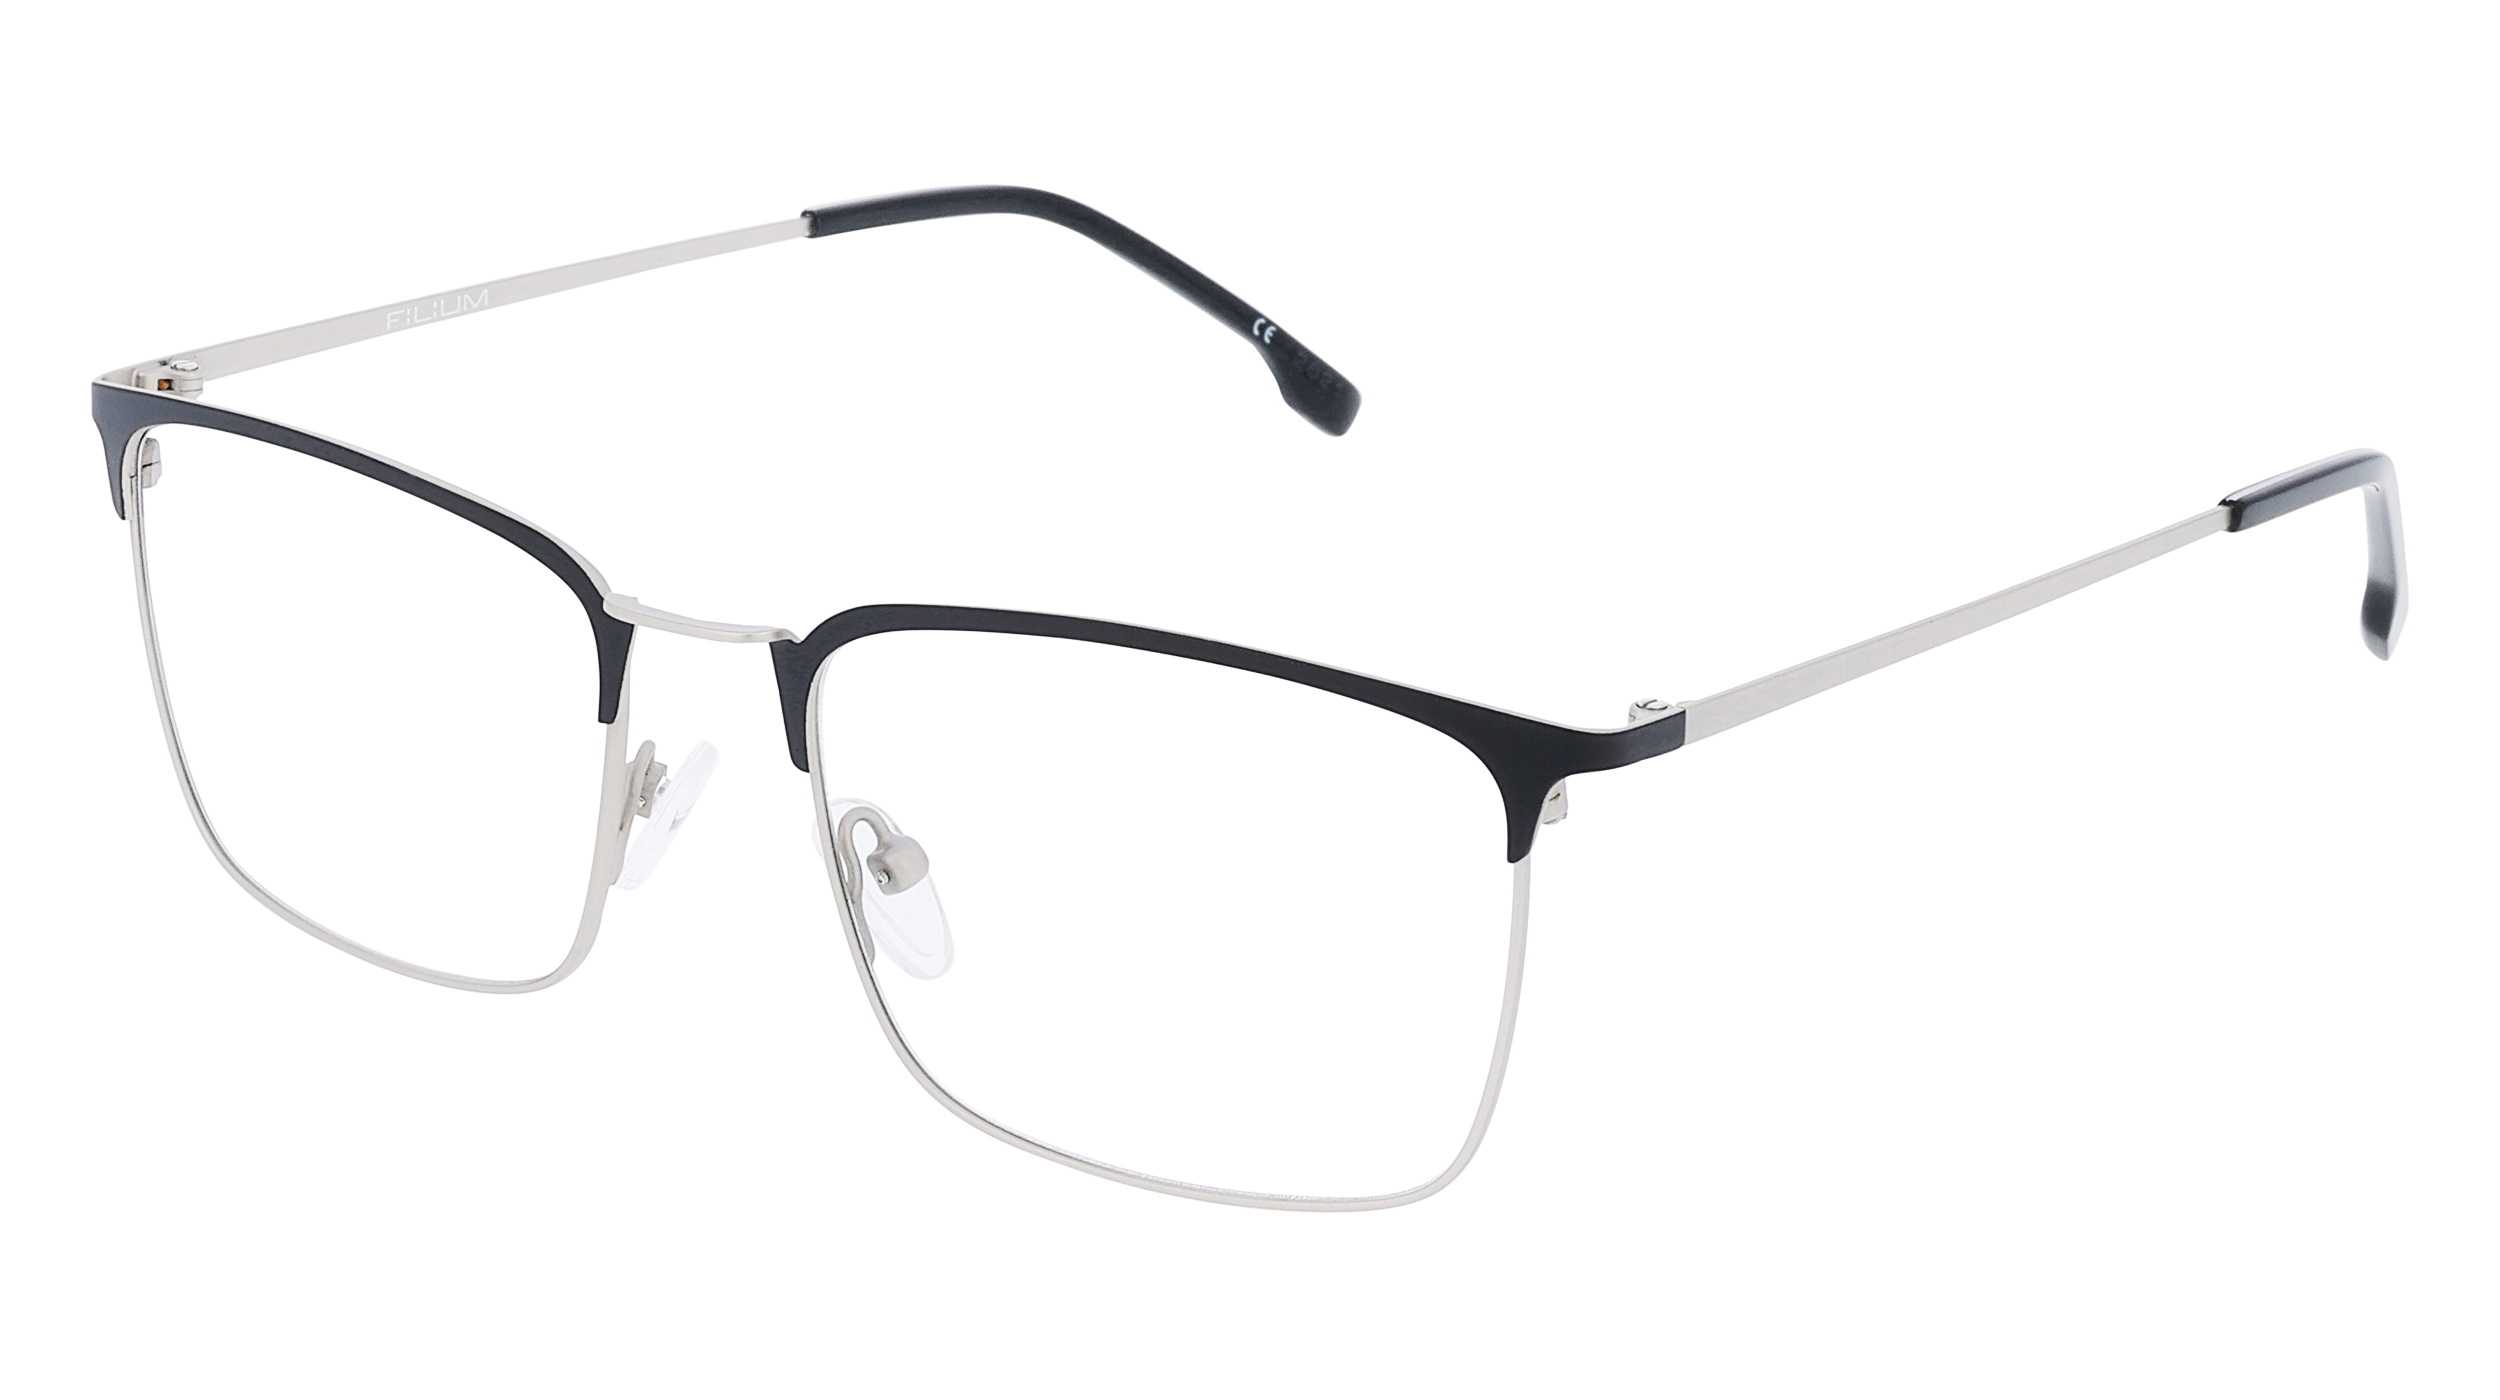 lunettes-de-vue-filium-fi-2212-noar-53-17-homme-noir-argent-carr-e